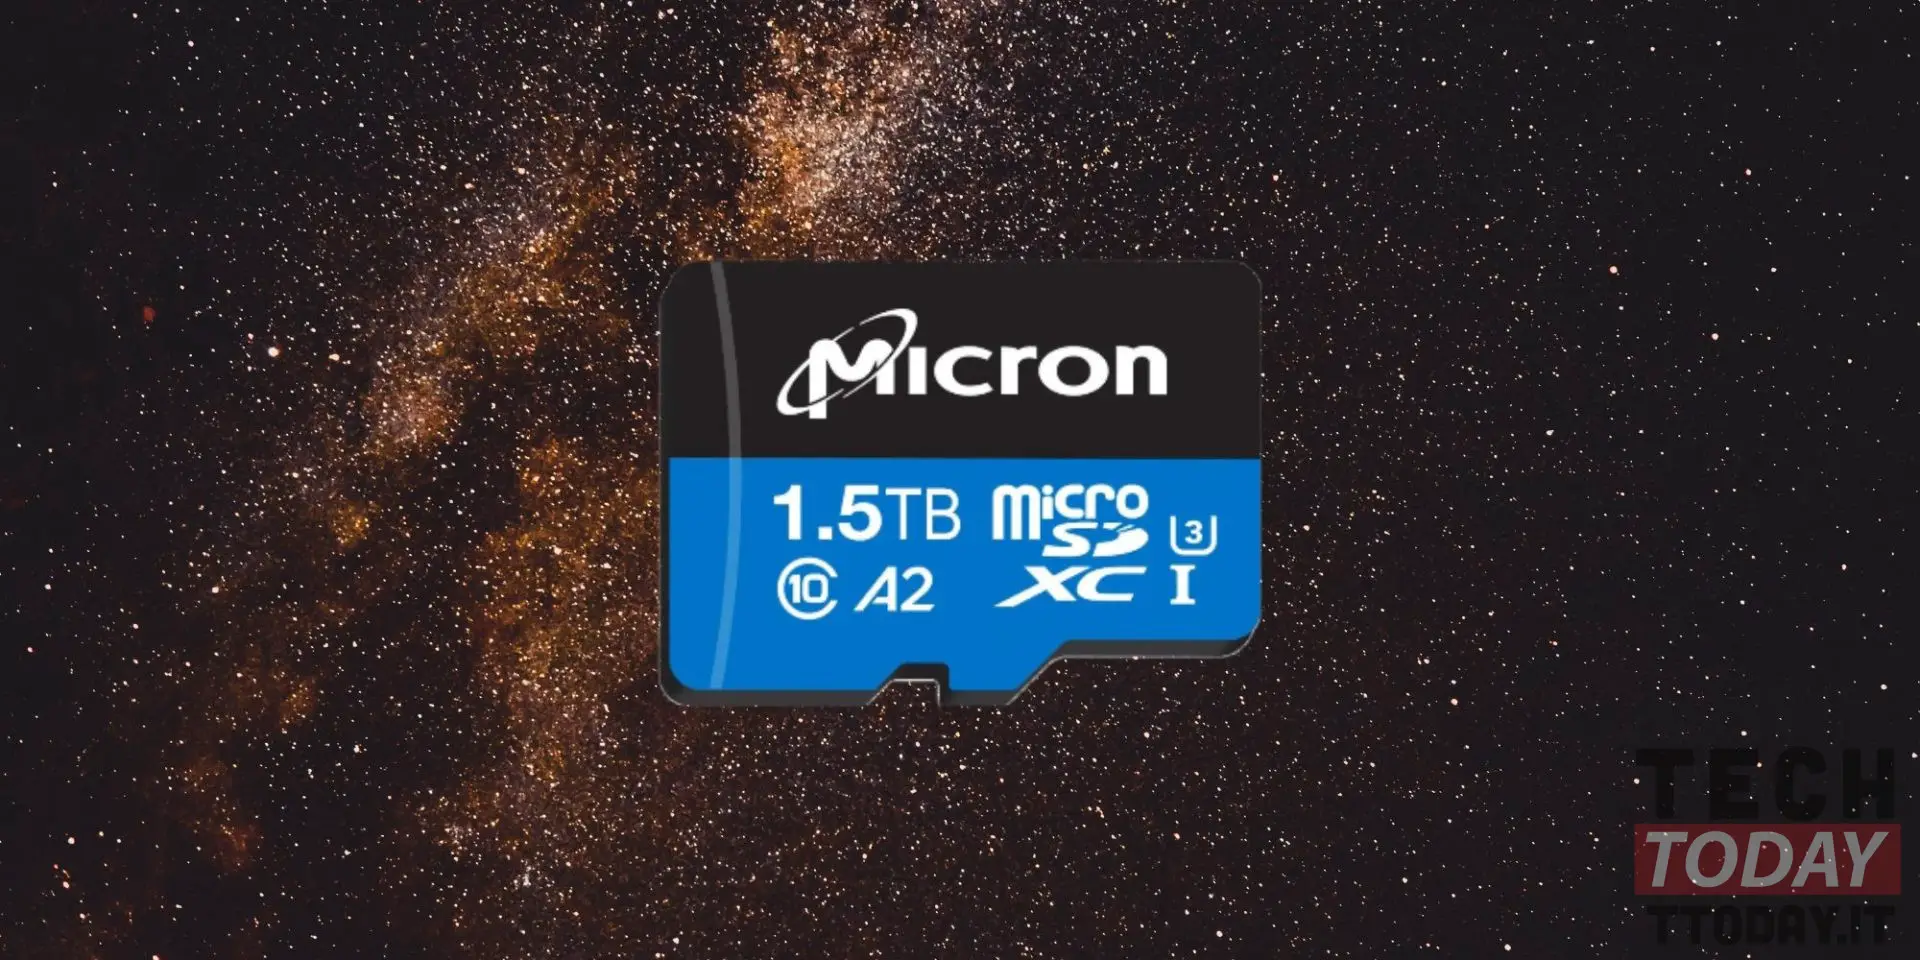 mikron microsd 1.5 tb